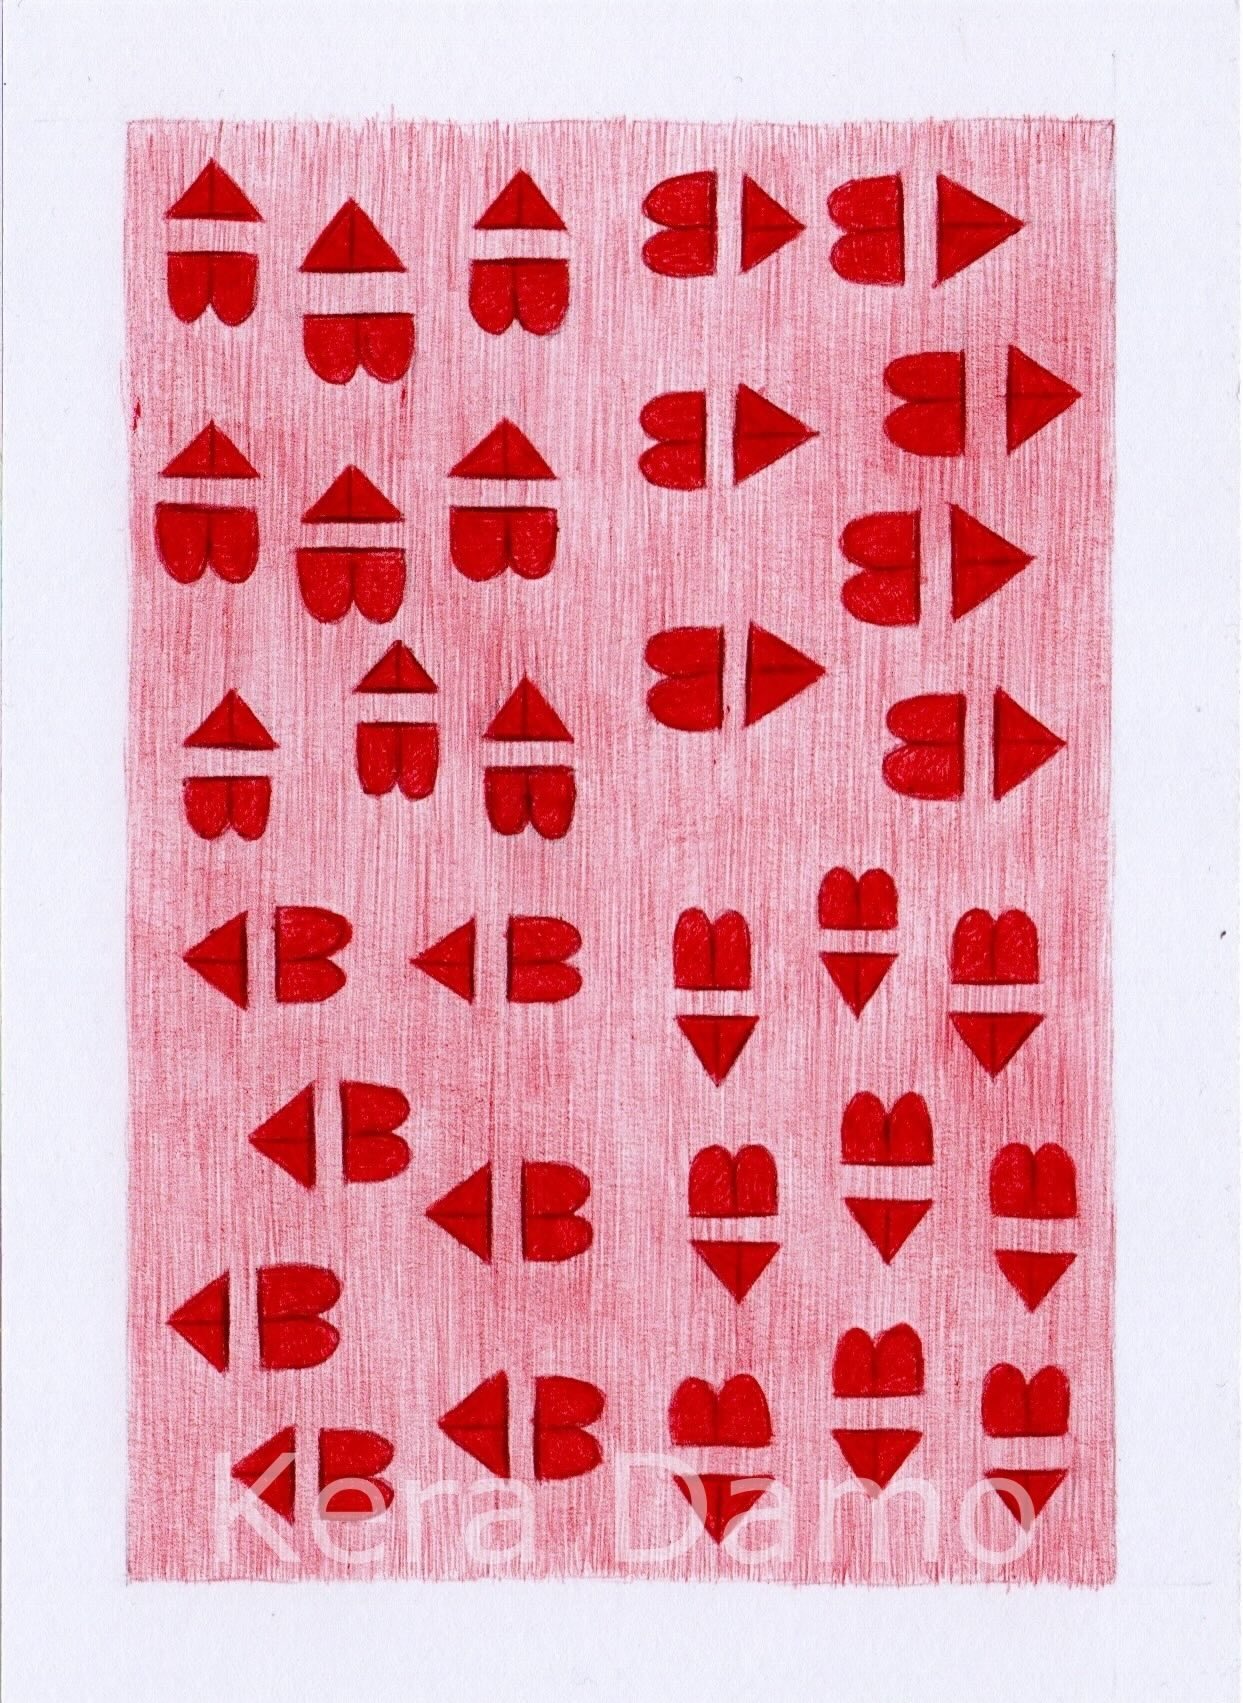 A red bic pen drawing depicting going inwards, made by visual artist Kera Damo from the Hague / Een rode bic pentekening die het inwaardse verbeeld, gemaakt door beeldend kunstenaar Kera Damo uit Den Haag